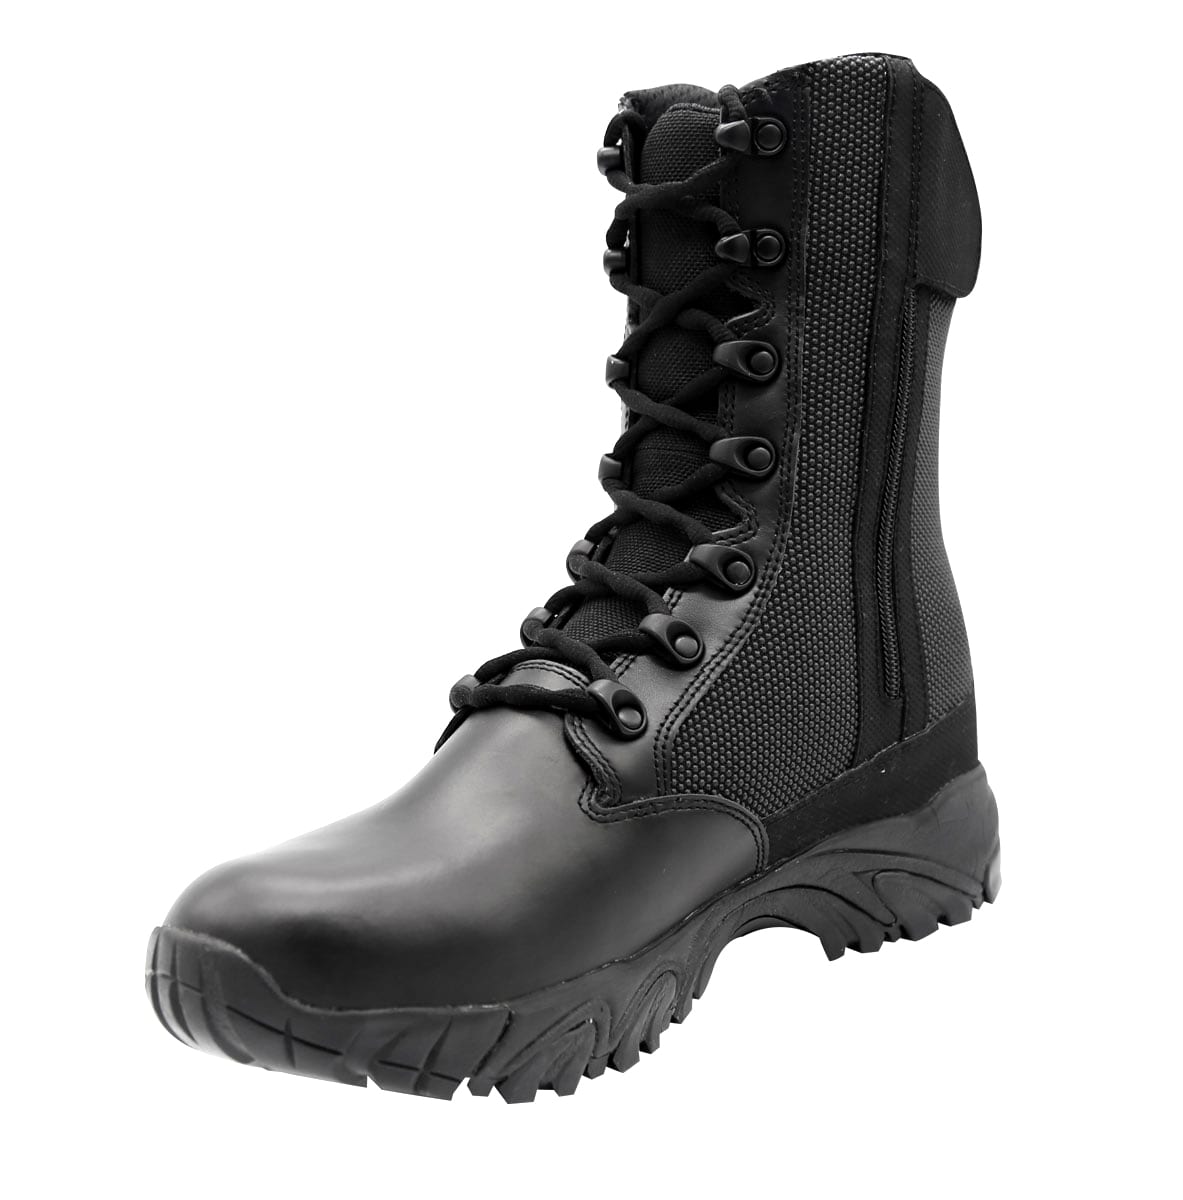 waterproof steel toe combat boots